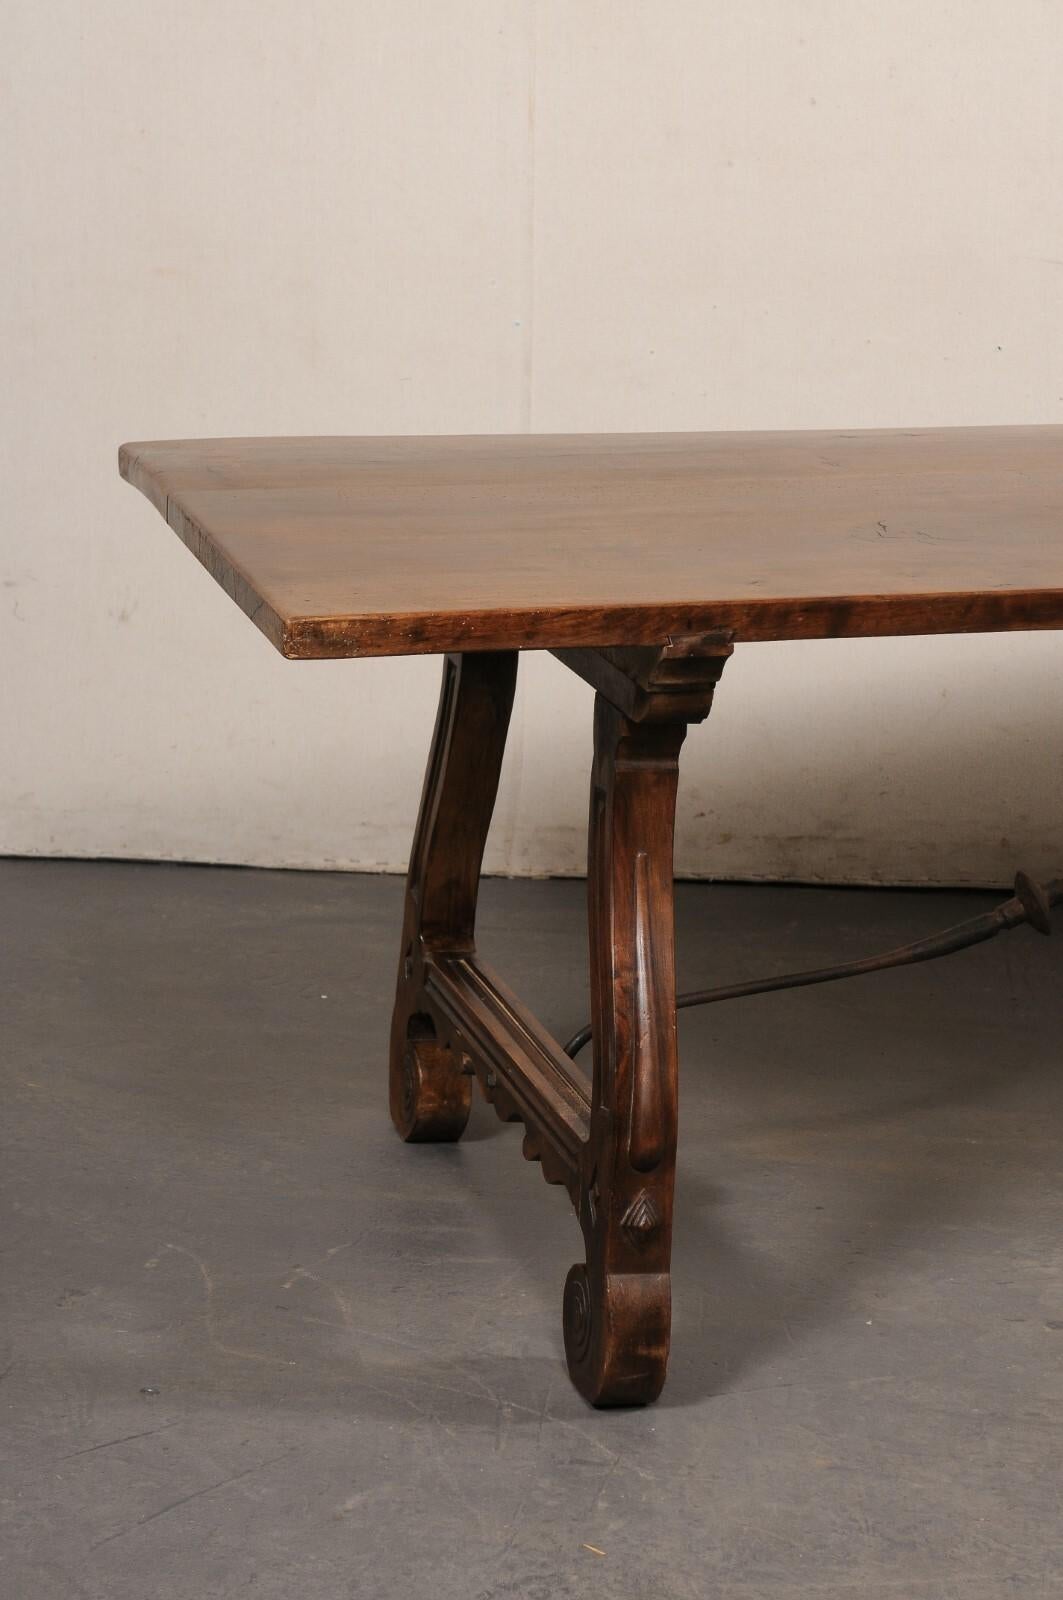 Splendido tavolo a cavalletto in legno di noce intagliato spagnolo con barella in ferro della metà del XX secolo. Questo tavolo d'epoca proveniente dalla Spagna presenta un piano di forma rettangolare, lungo poco più di due metri e mezzo, sollevato